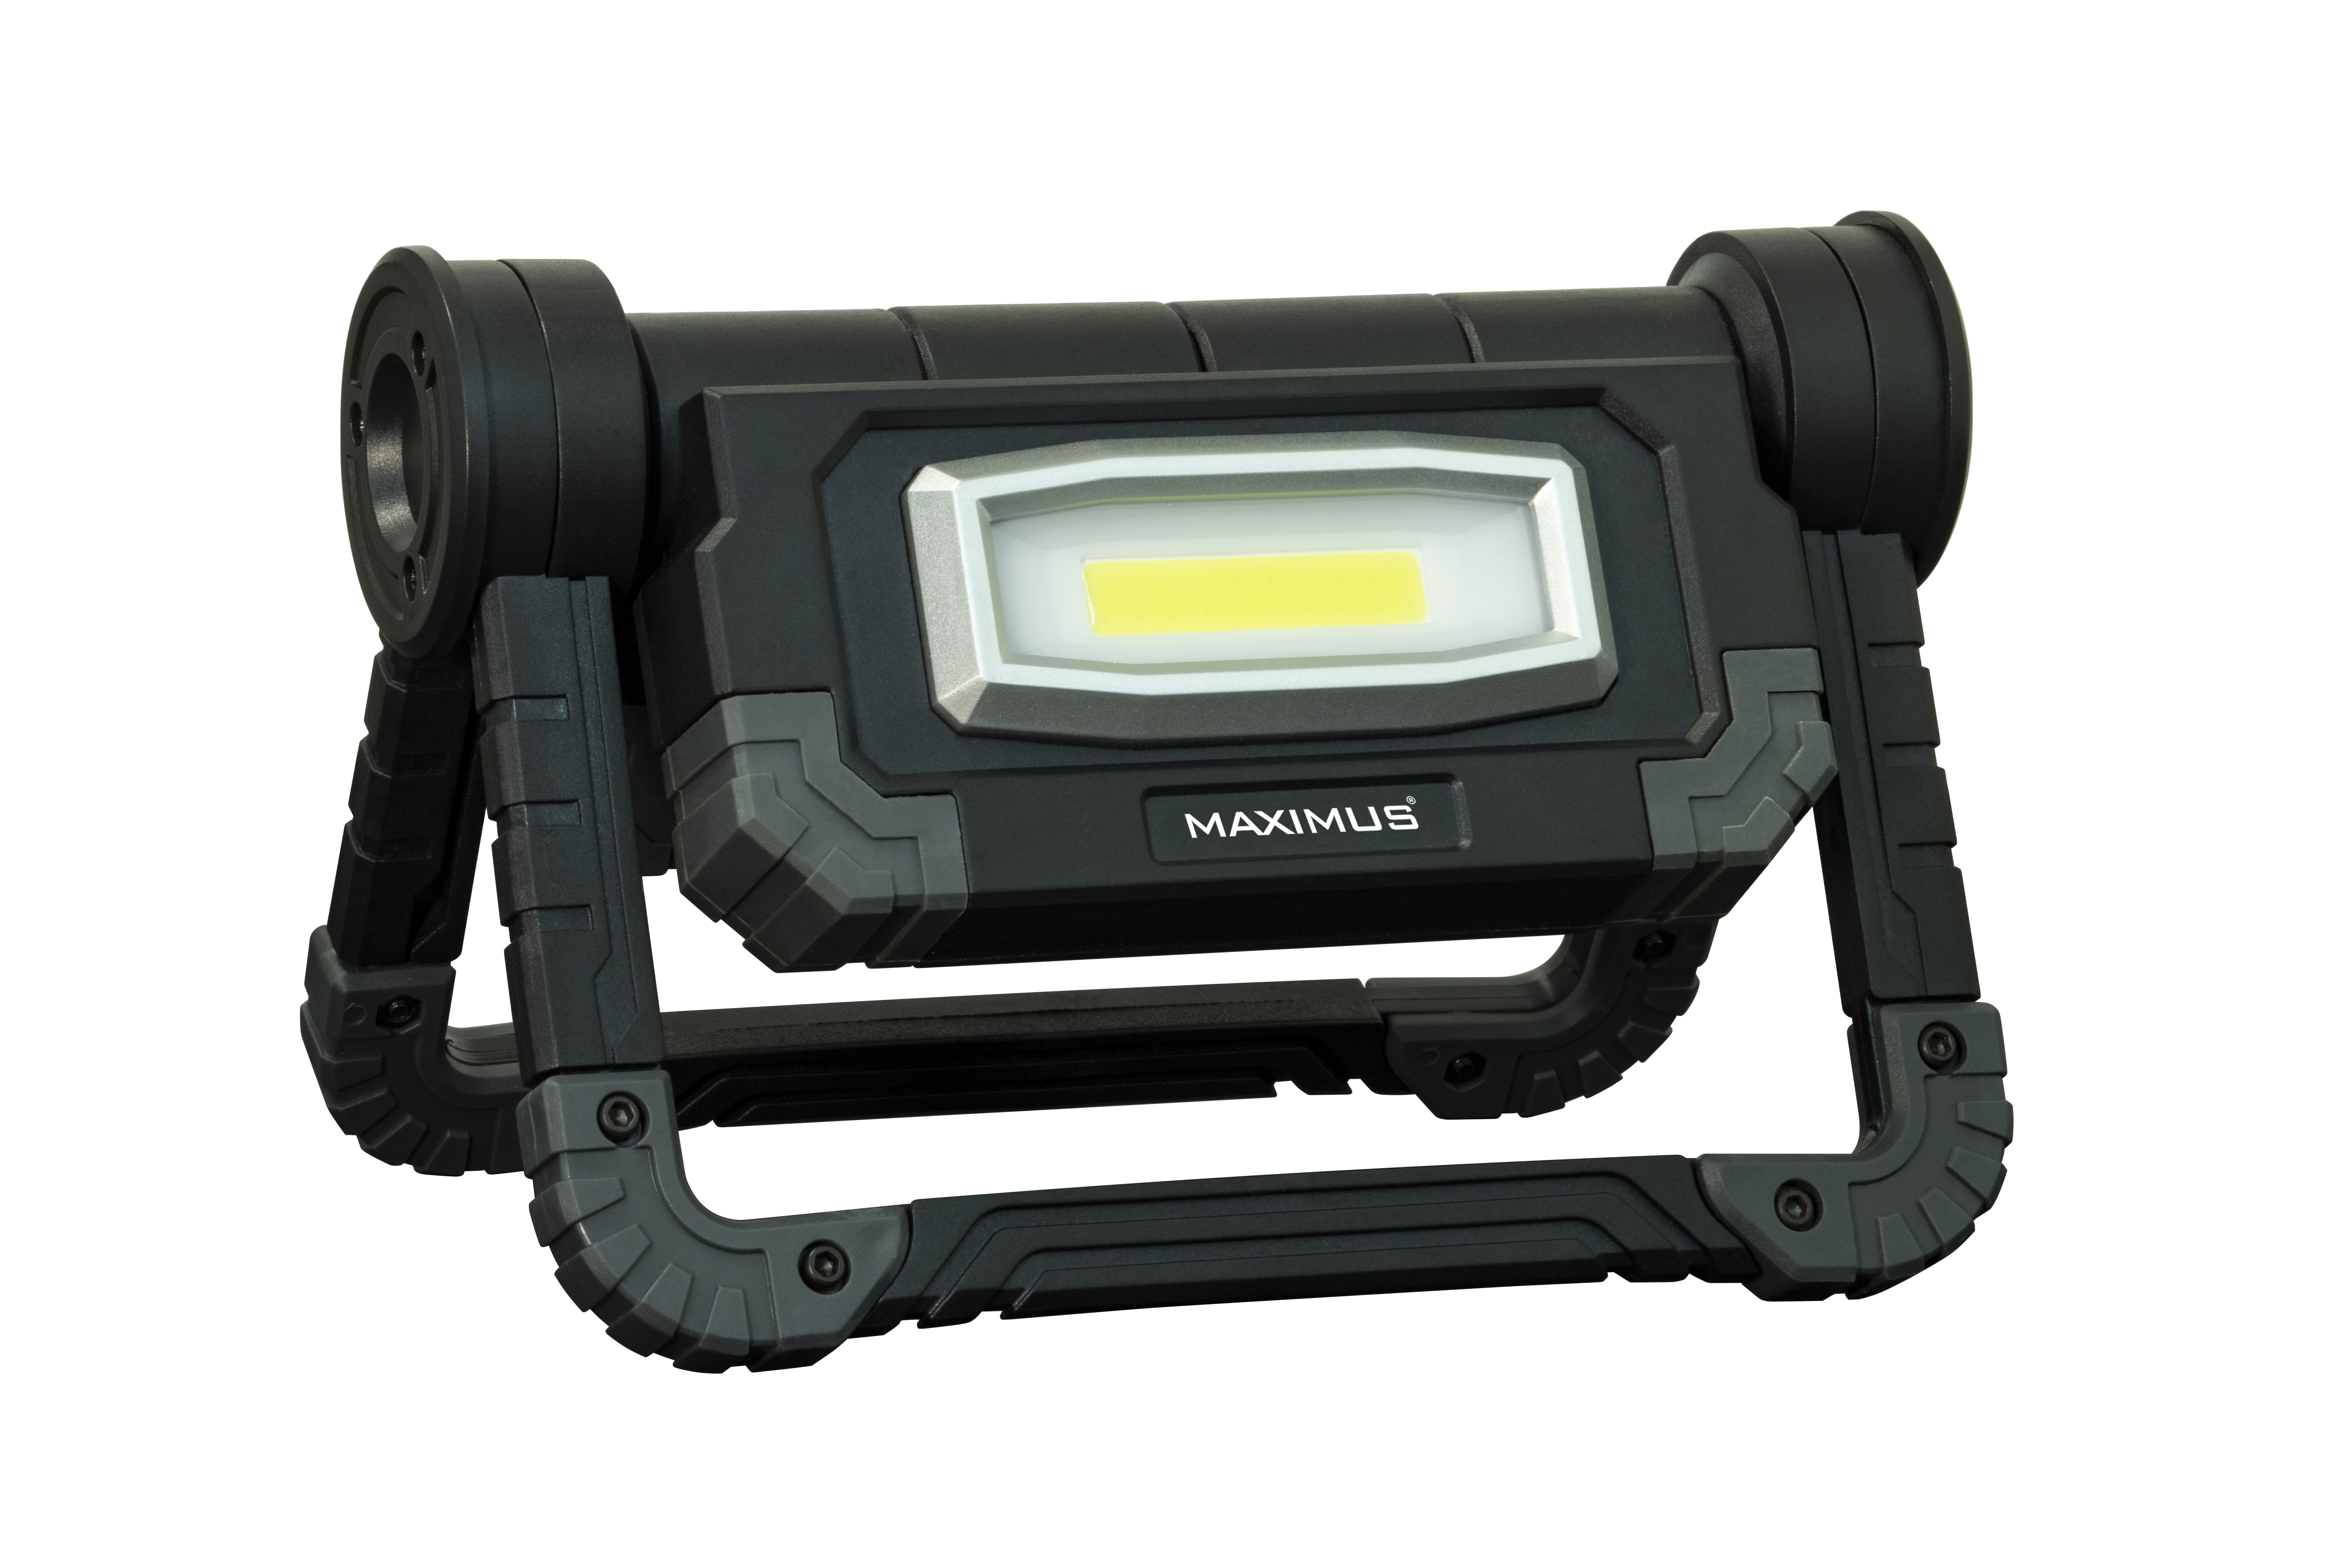 Maximus M-WKL-019B-DU LED Arbeitsscheinwerfer mit 2x 10 Watt LED, 1000 Lumen, batteriebetrieben mit 4x AA Batterien